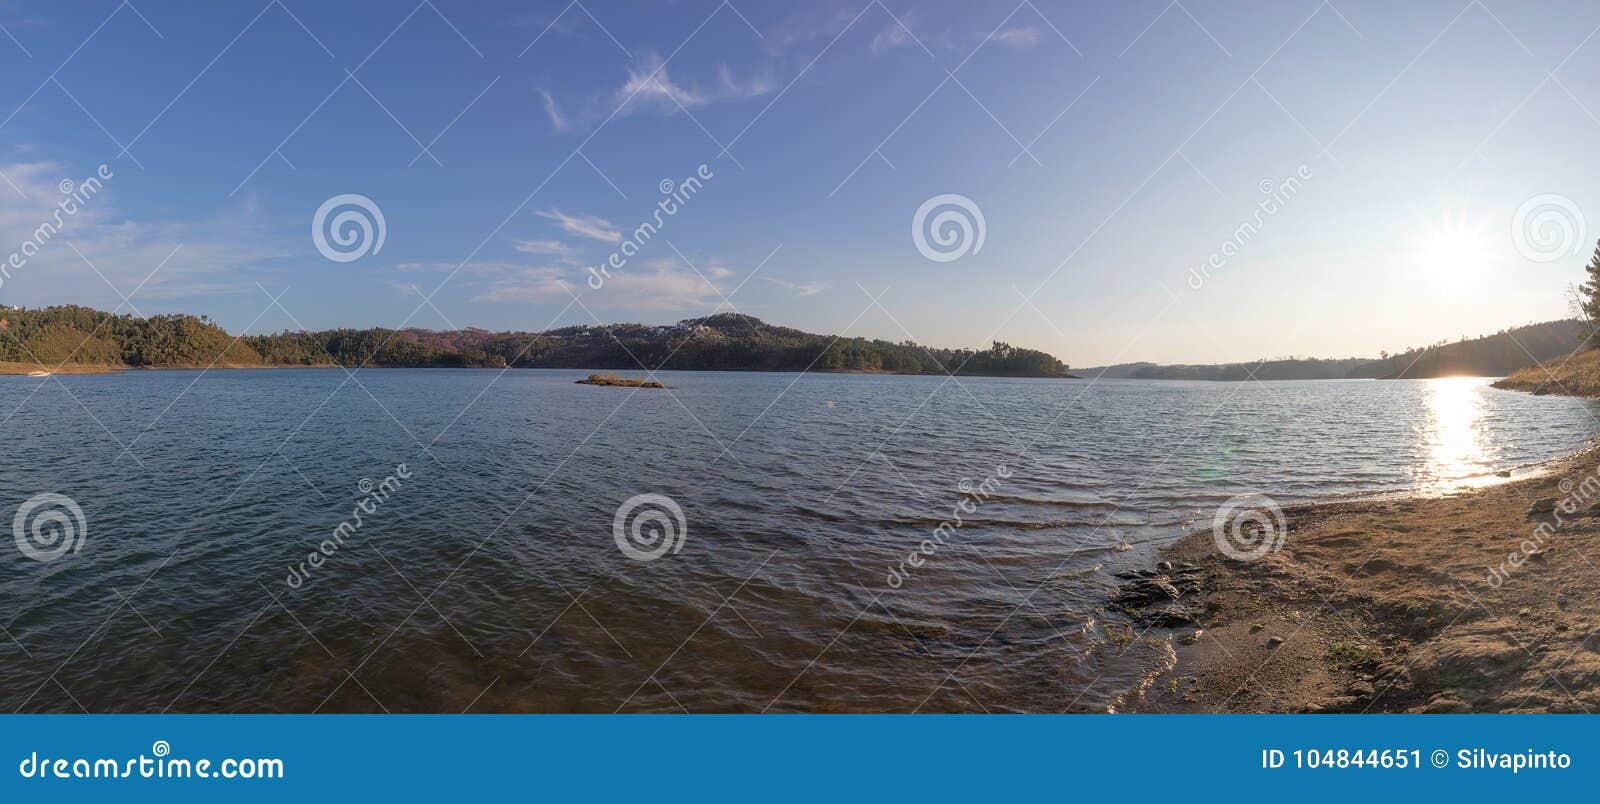 lake panorama of srra de tomar. portugal.